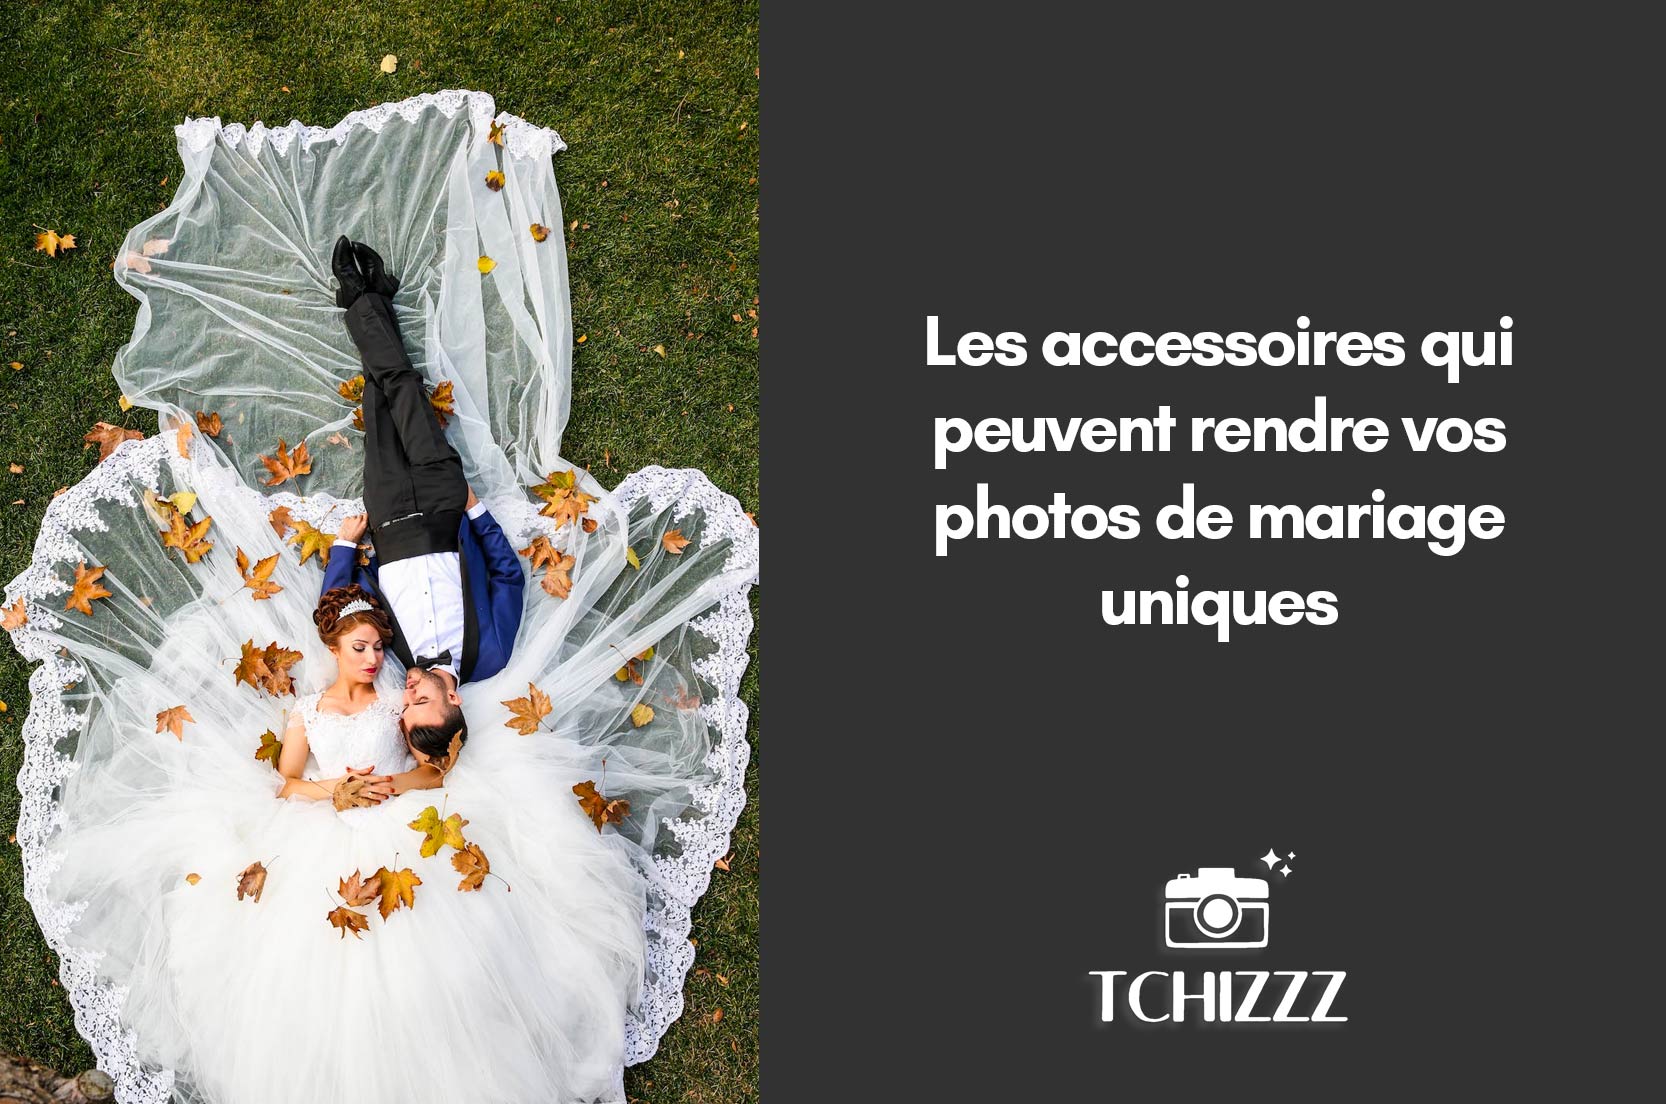 You are currently viewing Les accessoires qui peuvent rendre vos photos de mariage uniques